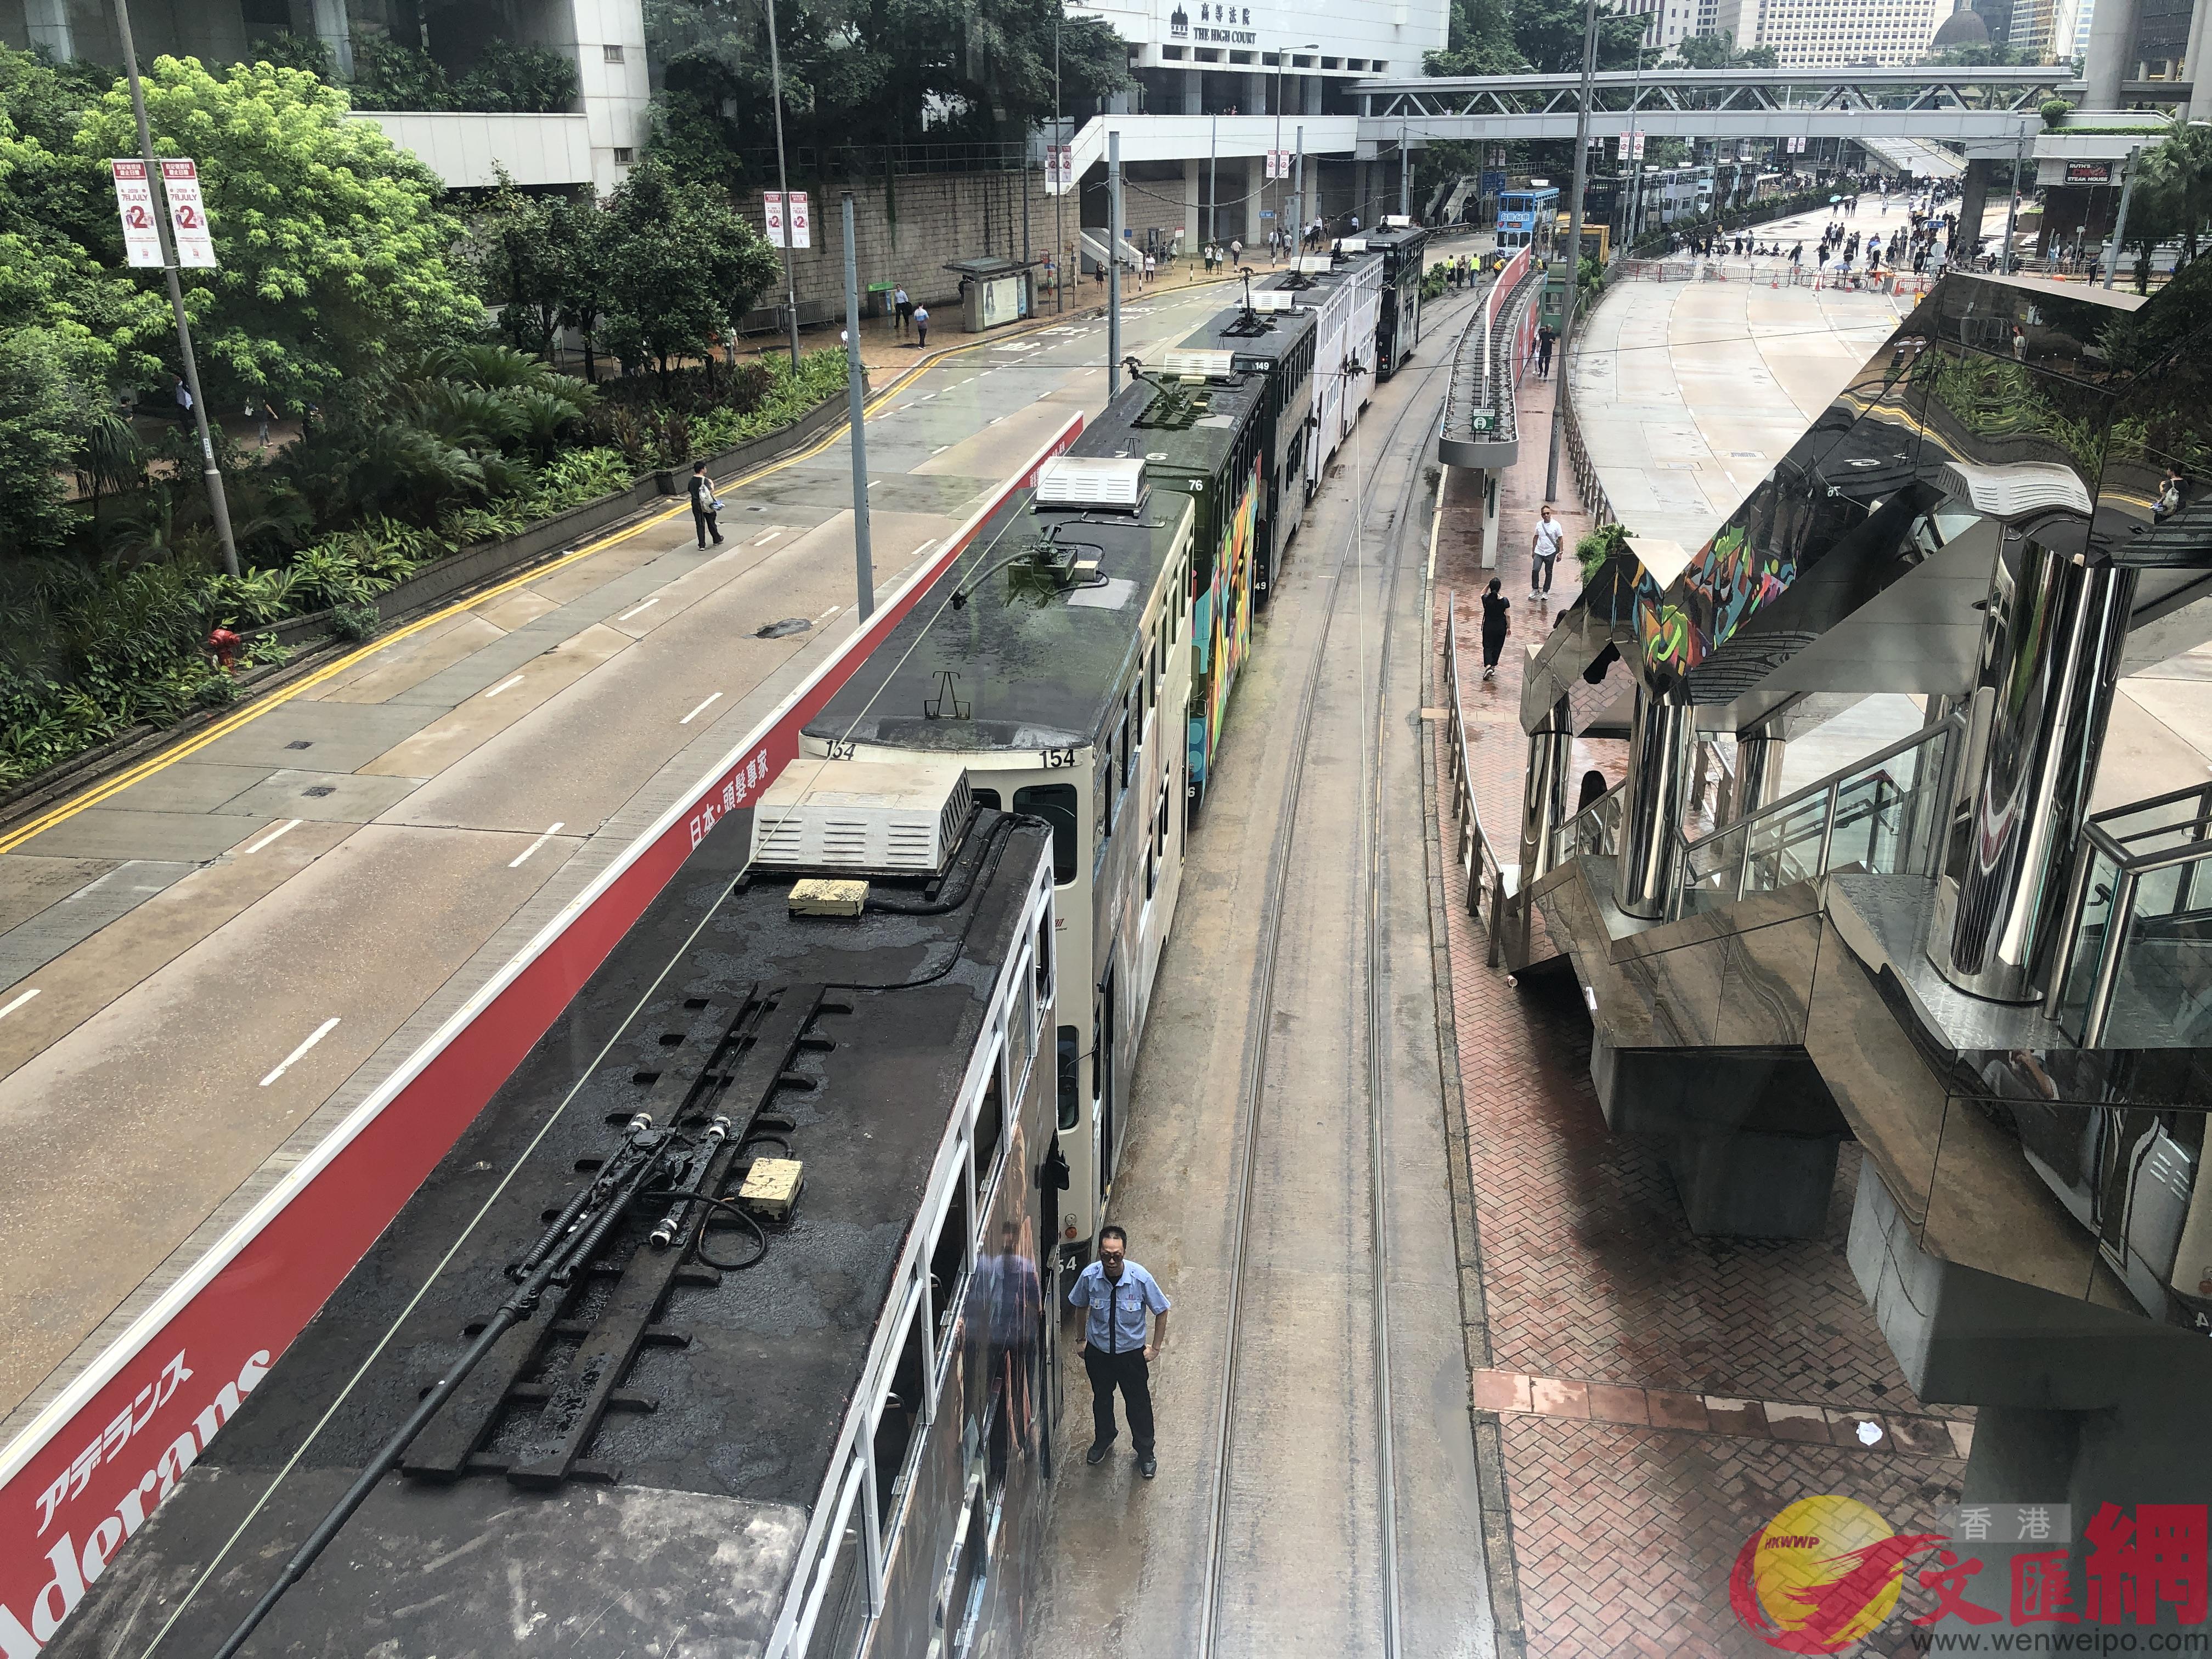 示威者阻塞交通A20余輛電車無法正常運營C]全媒體記者李湃豐攝^